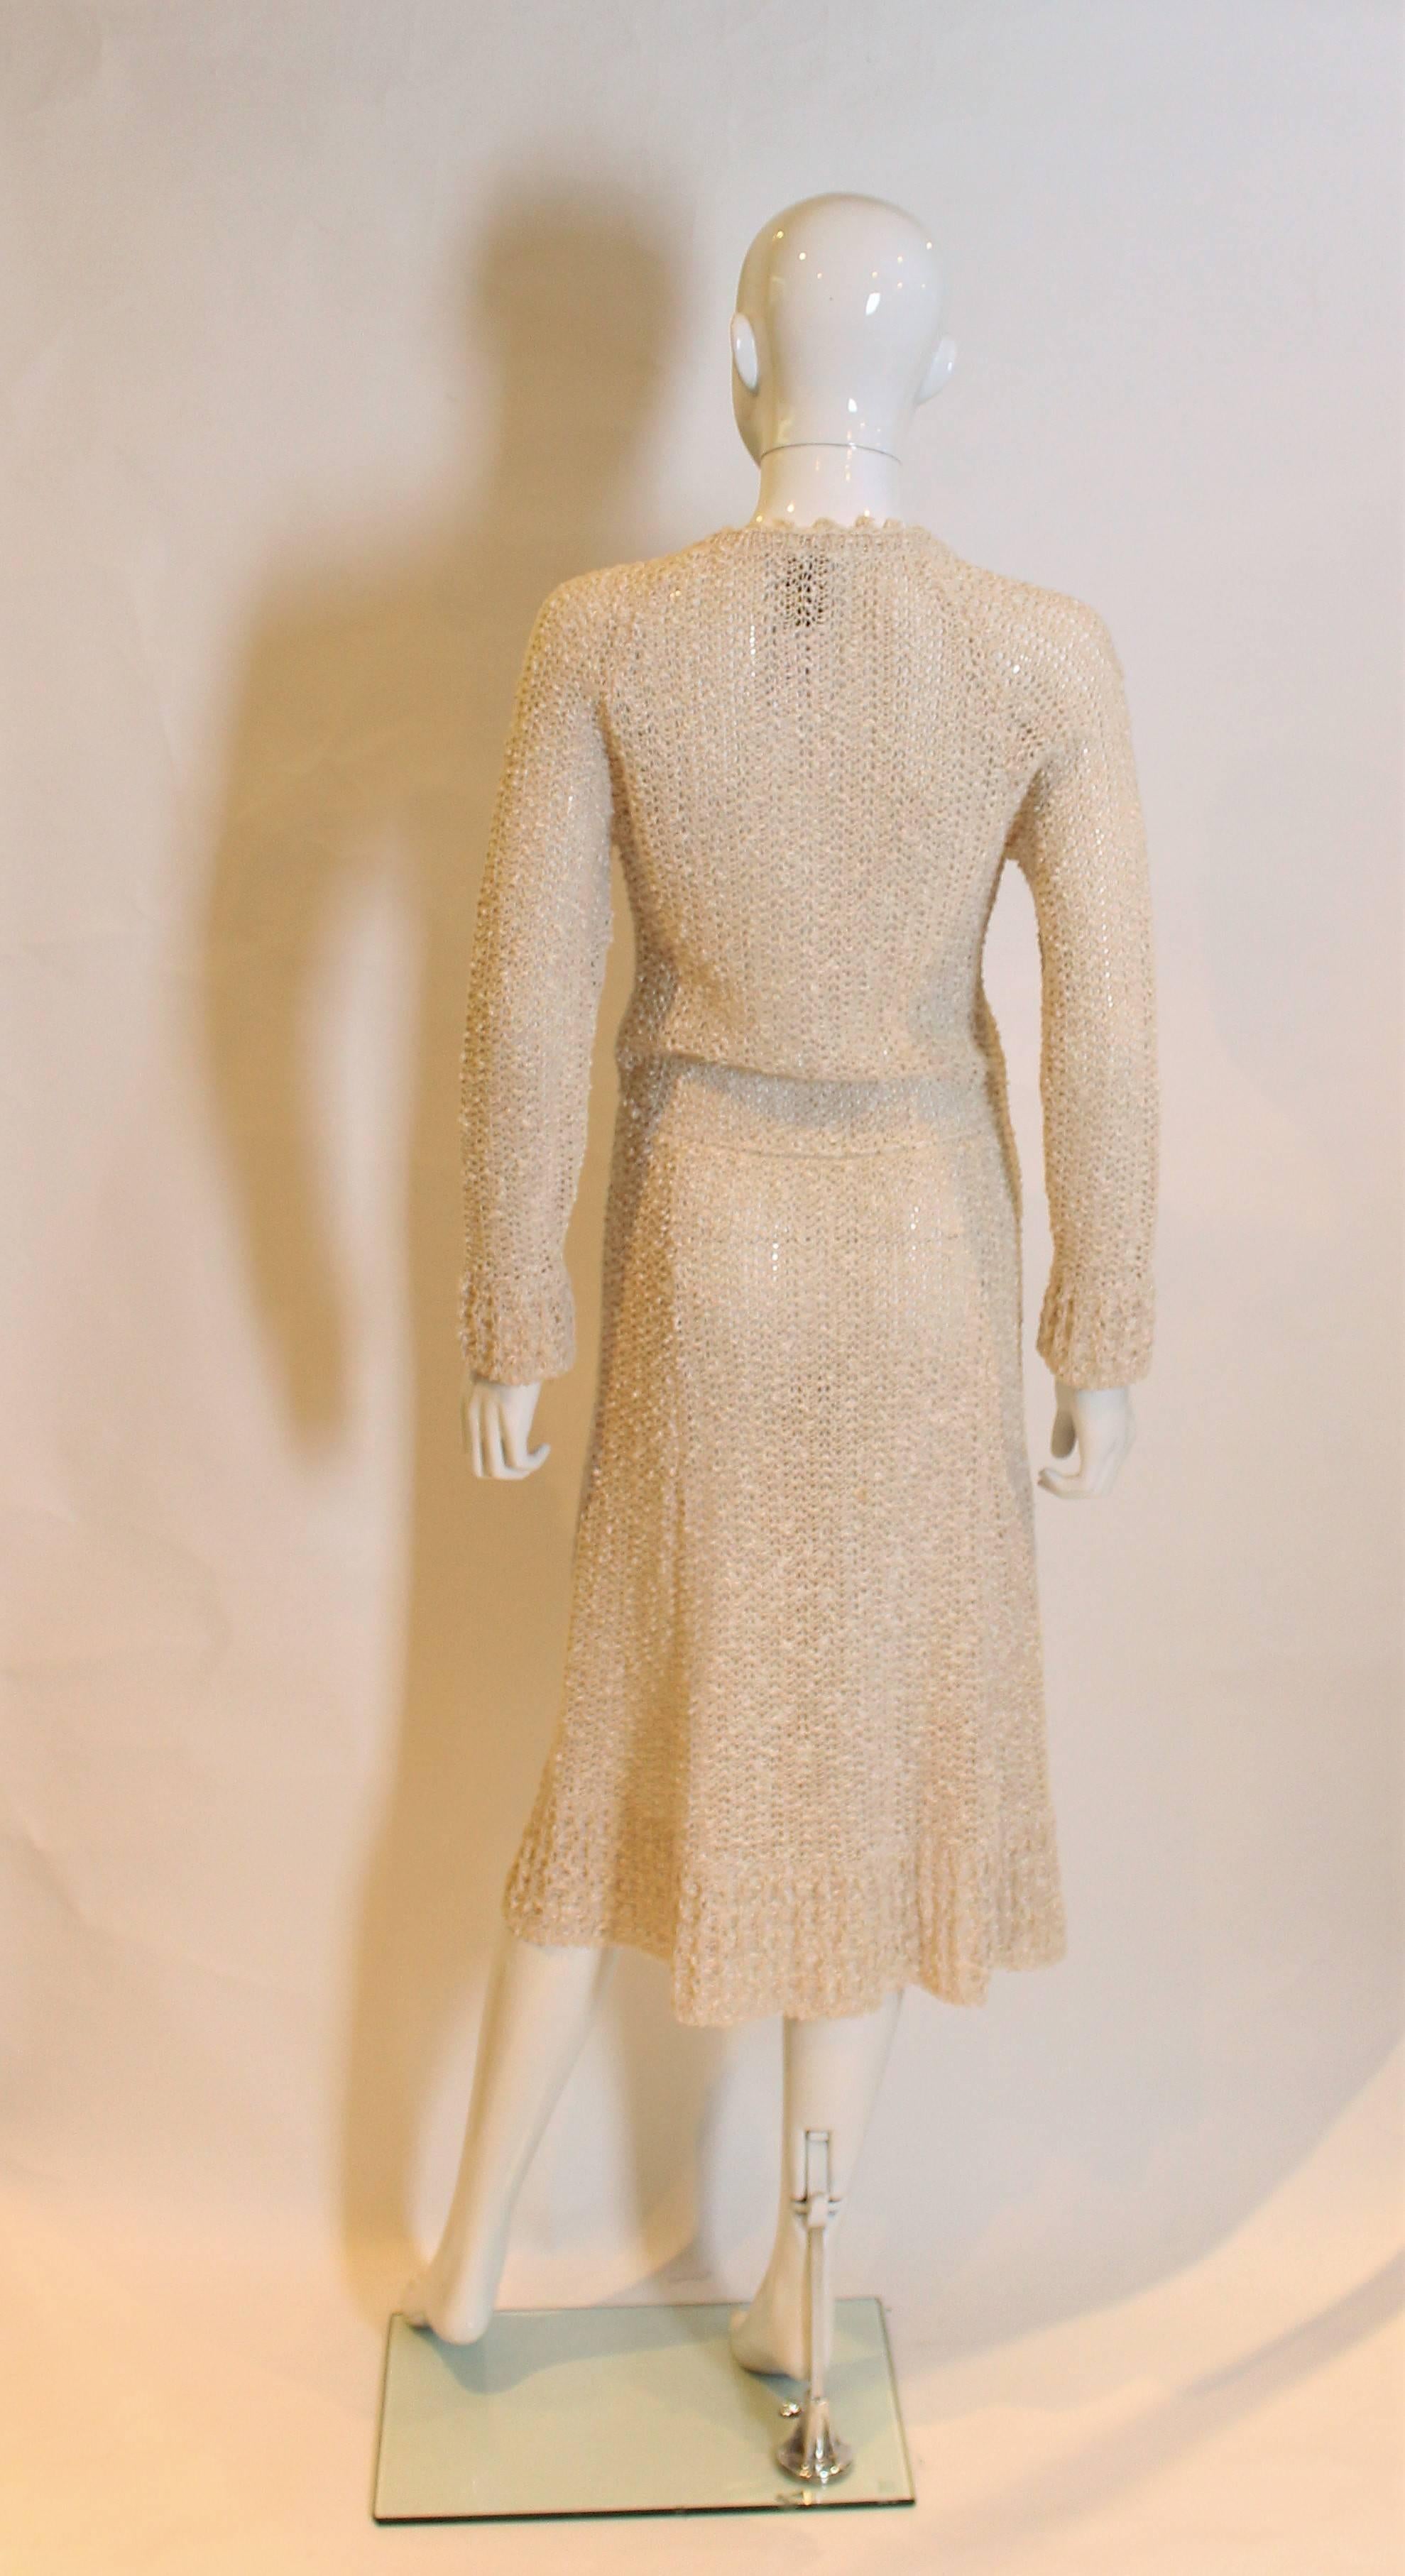 Women's Vintage 1970s Handloomed Crochet Dress